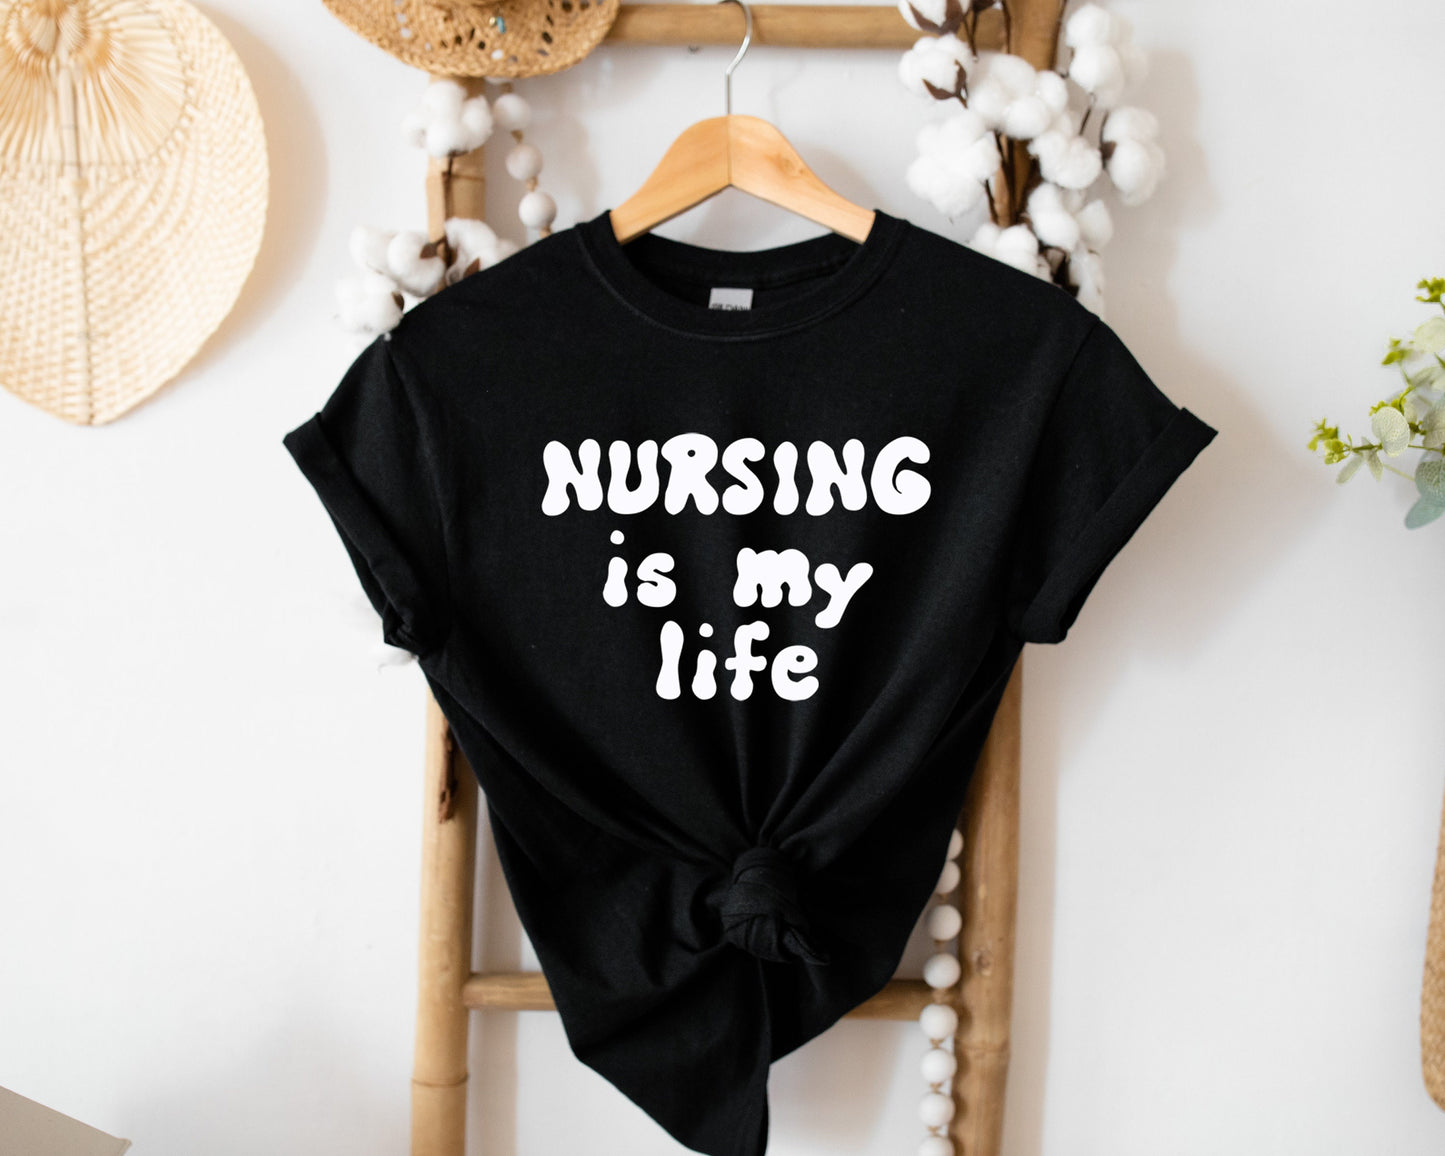 Nursing Is My Life Shirt, I love nurses shirt, Awesome gift shirt for nurses, gift shirt for special nurse, Thank you gift shirt for nurses